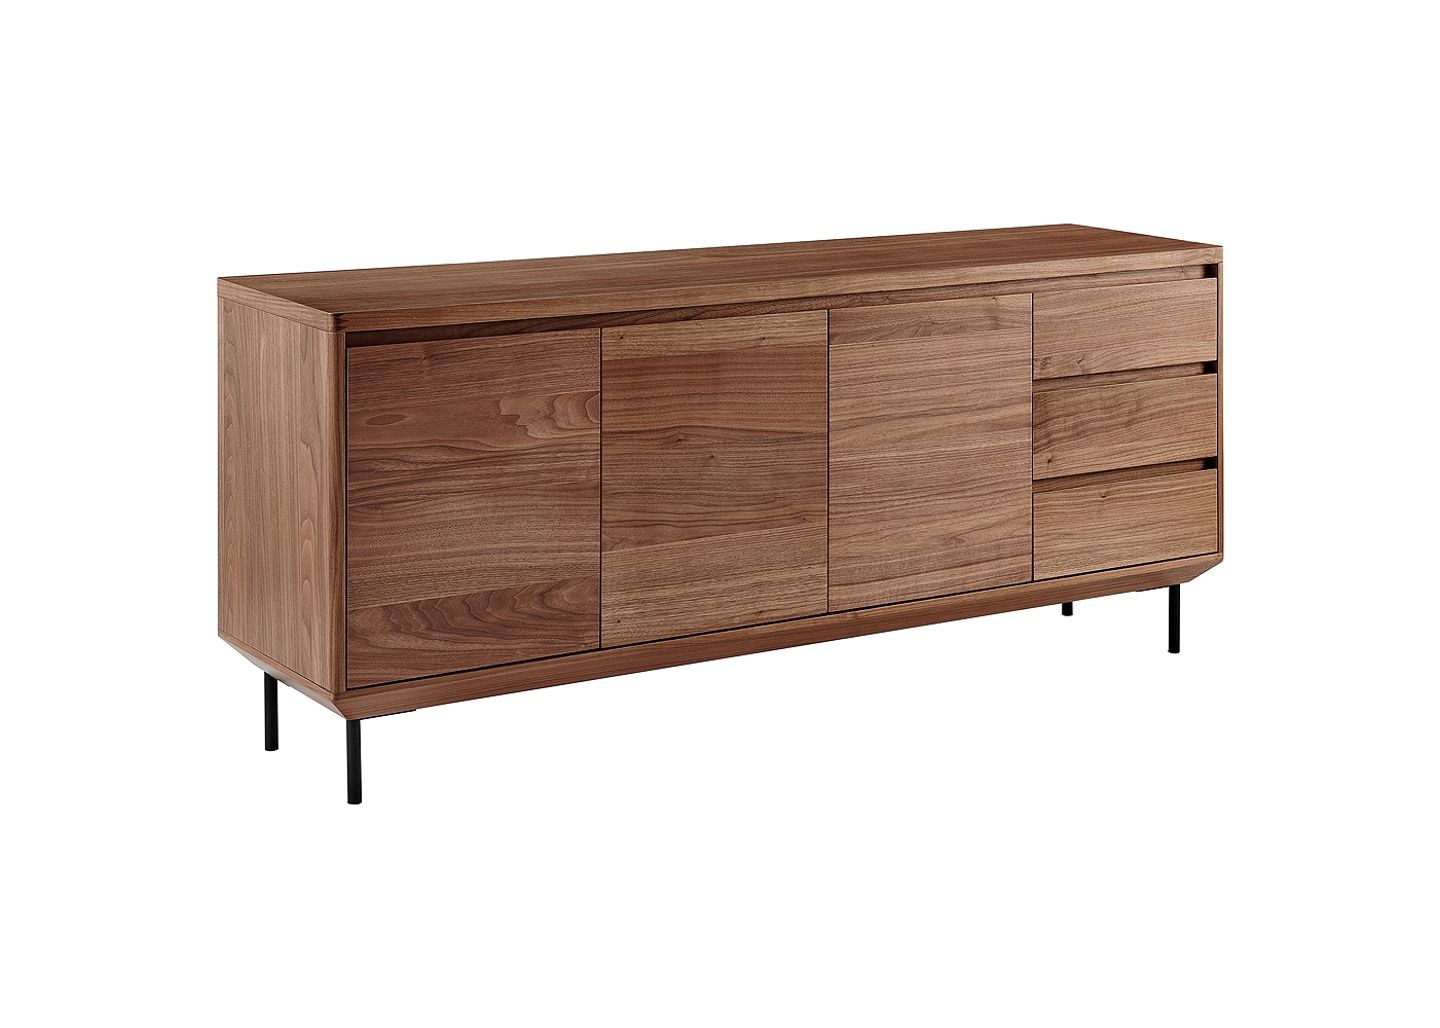 Euro Style Saga 63" Wide American Walnut Veneer Wood 3-Drawer Sideboard